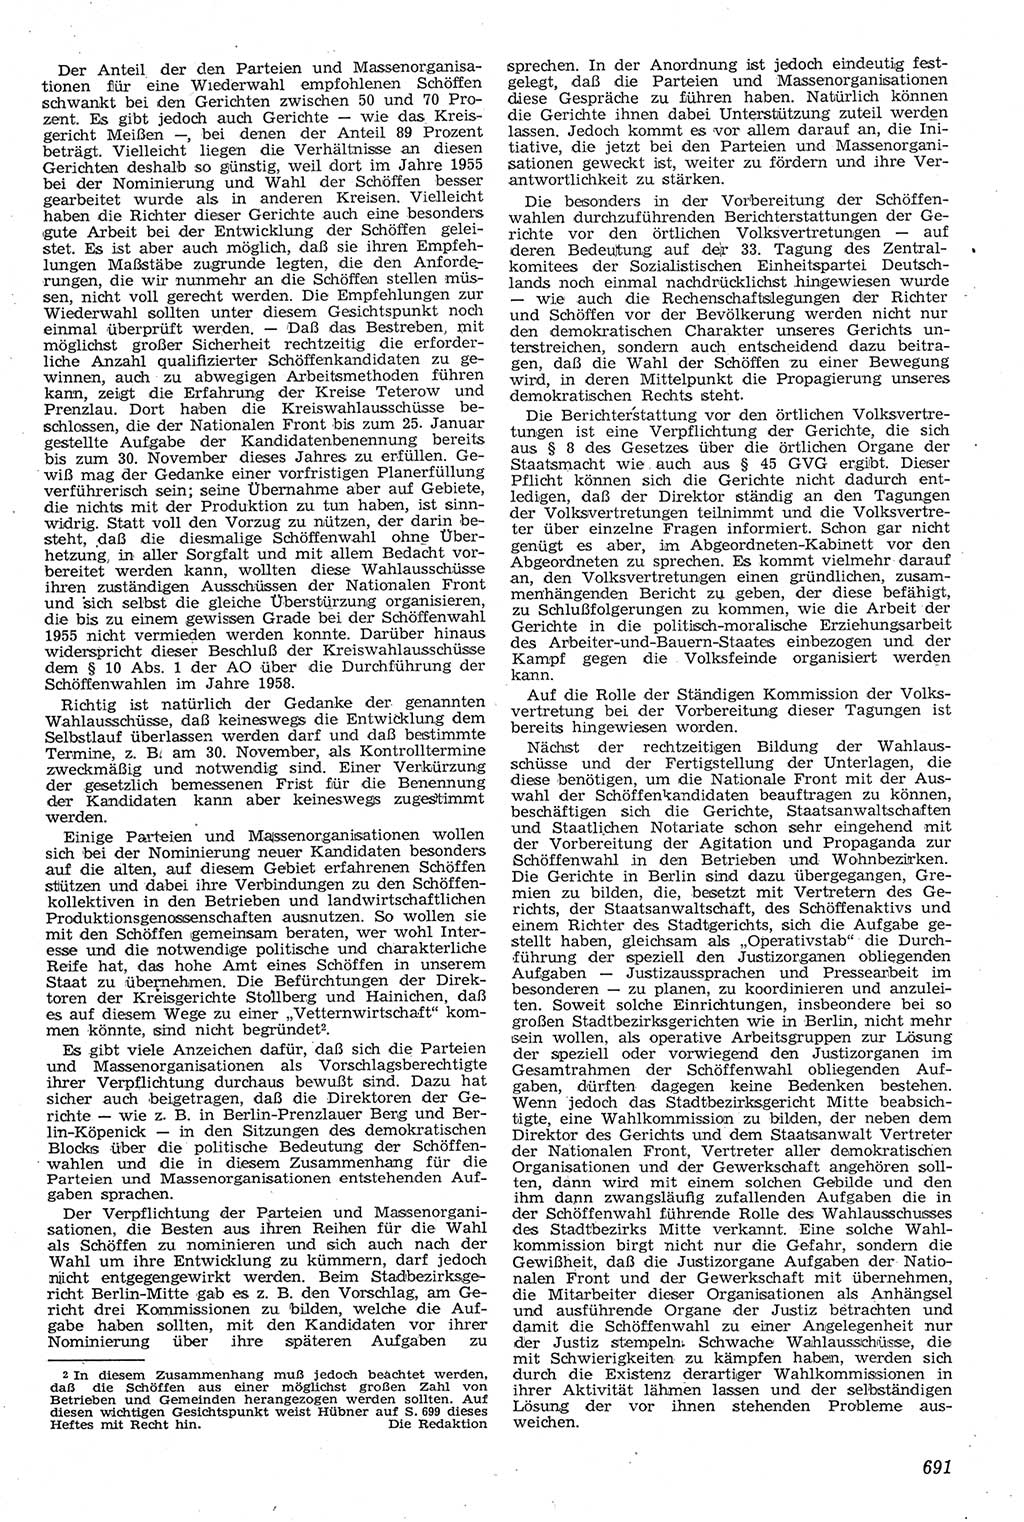 Neue Justiz (NJ), Zeitschrift für Recht und Rechtswissenschaft [Deutsche Demokratische Republik (DDR)], 11. Jahrgang 1957, Seite 691 (NJ DDR 1957, S. 691)